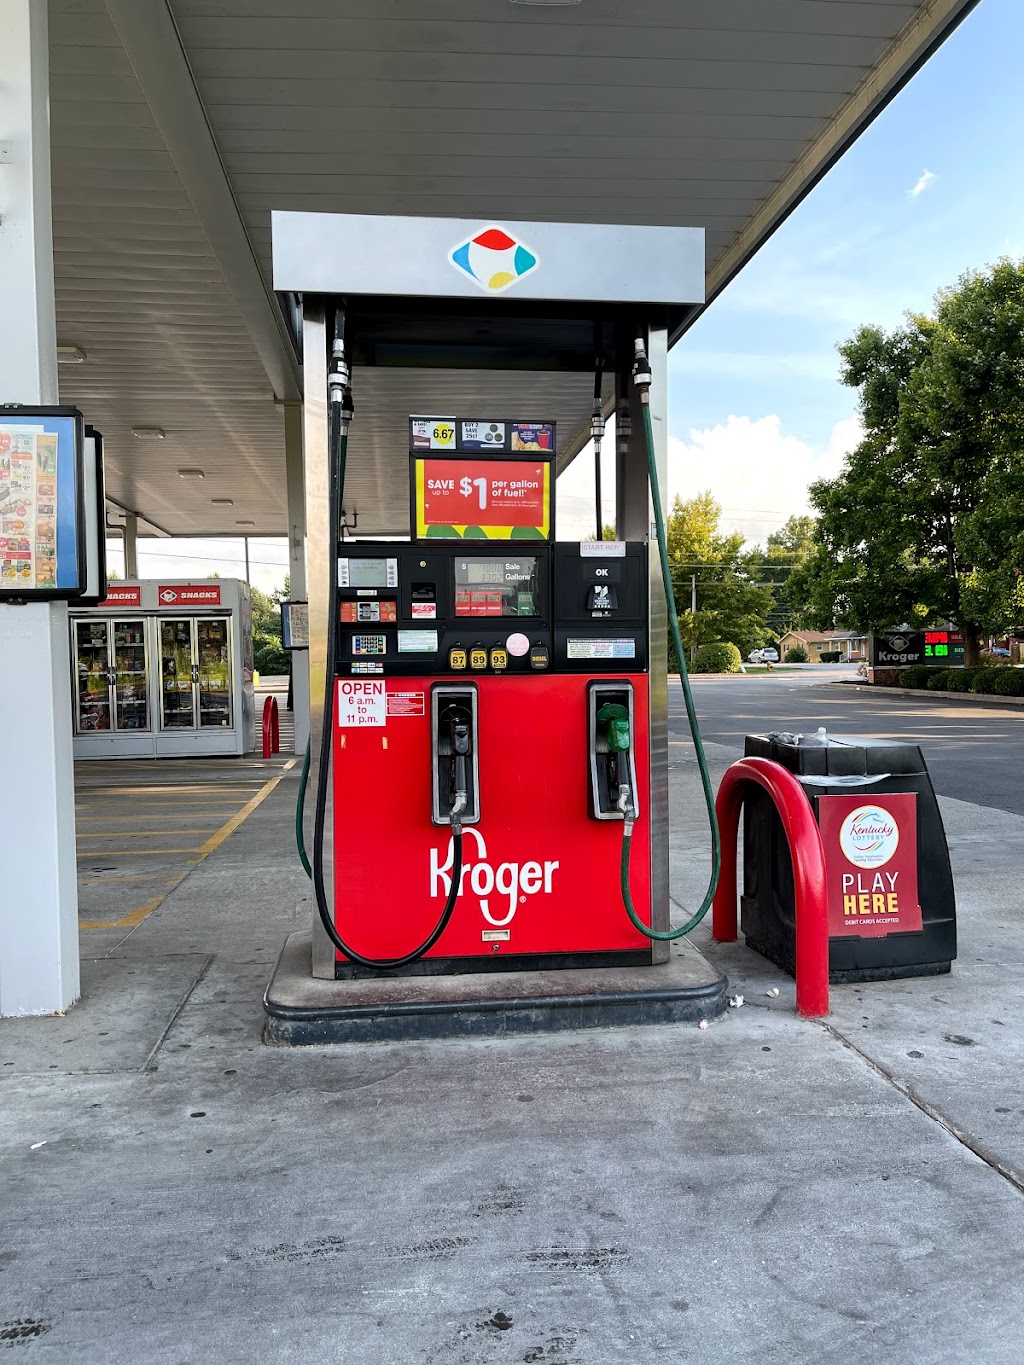 Kroger Fuel Center | 7509 Terry Rd, Louisville, KY 40258, USA | Phone: (502) 937-3178